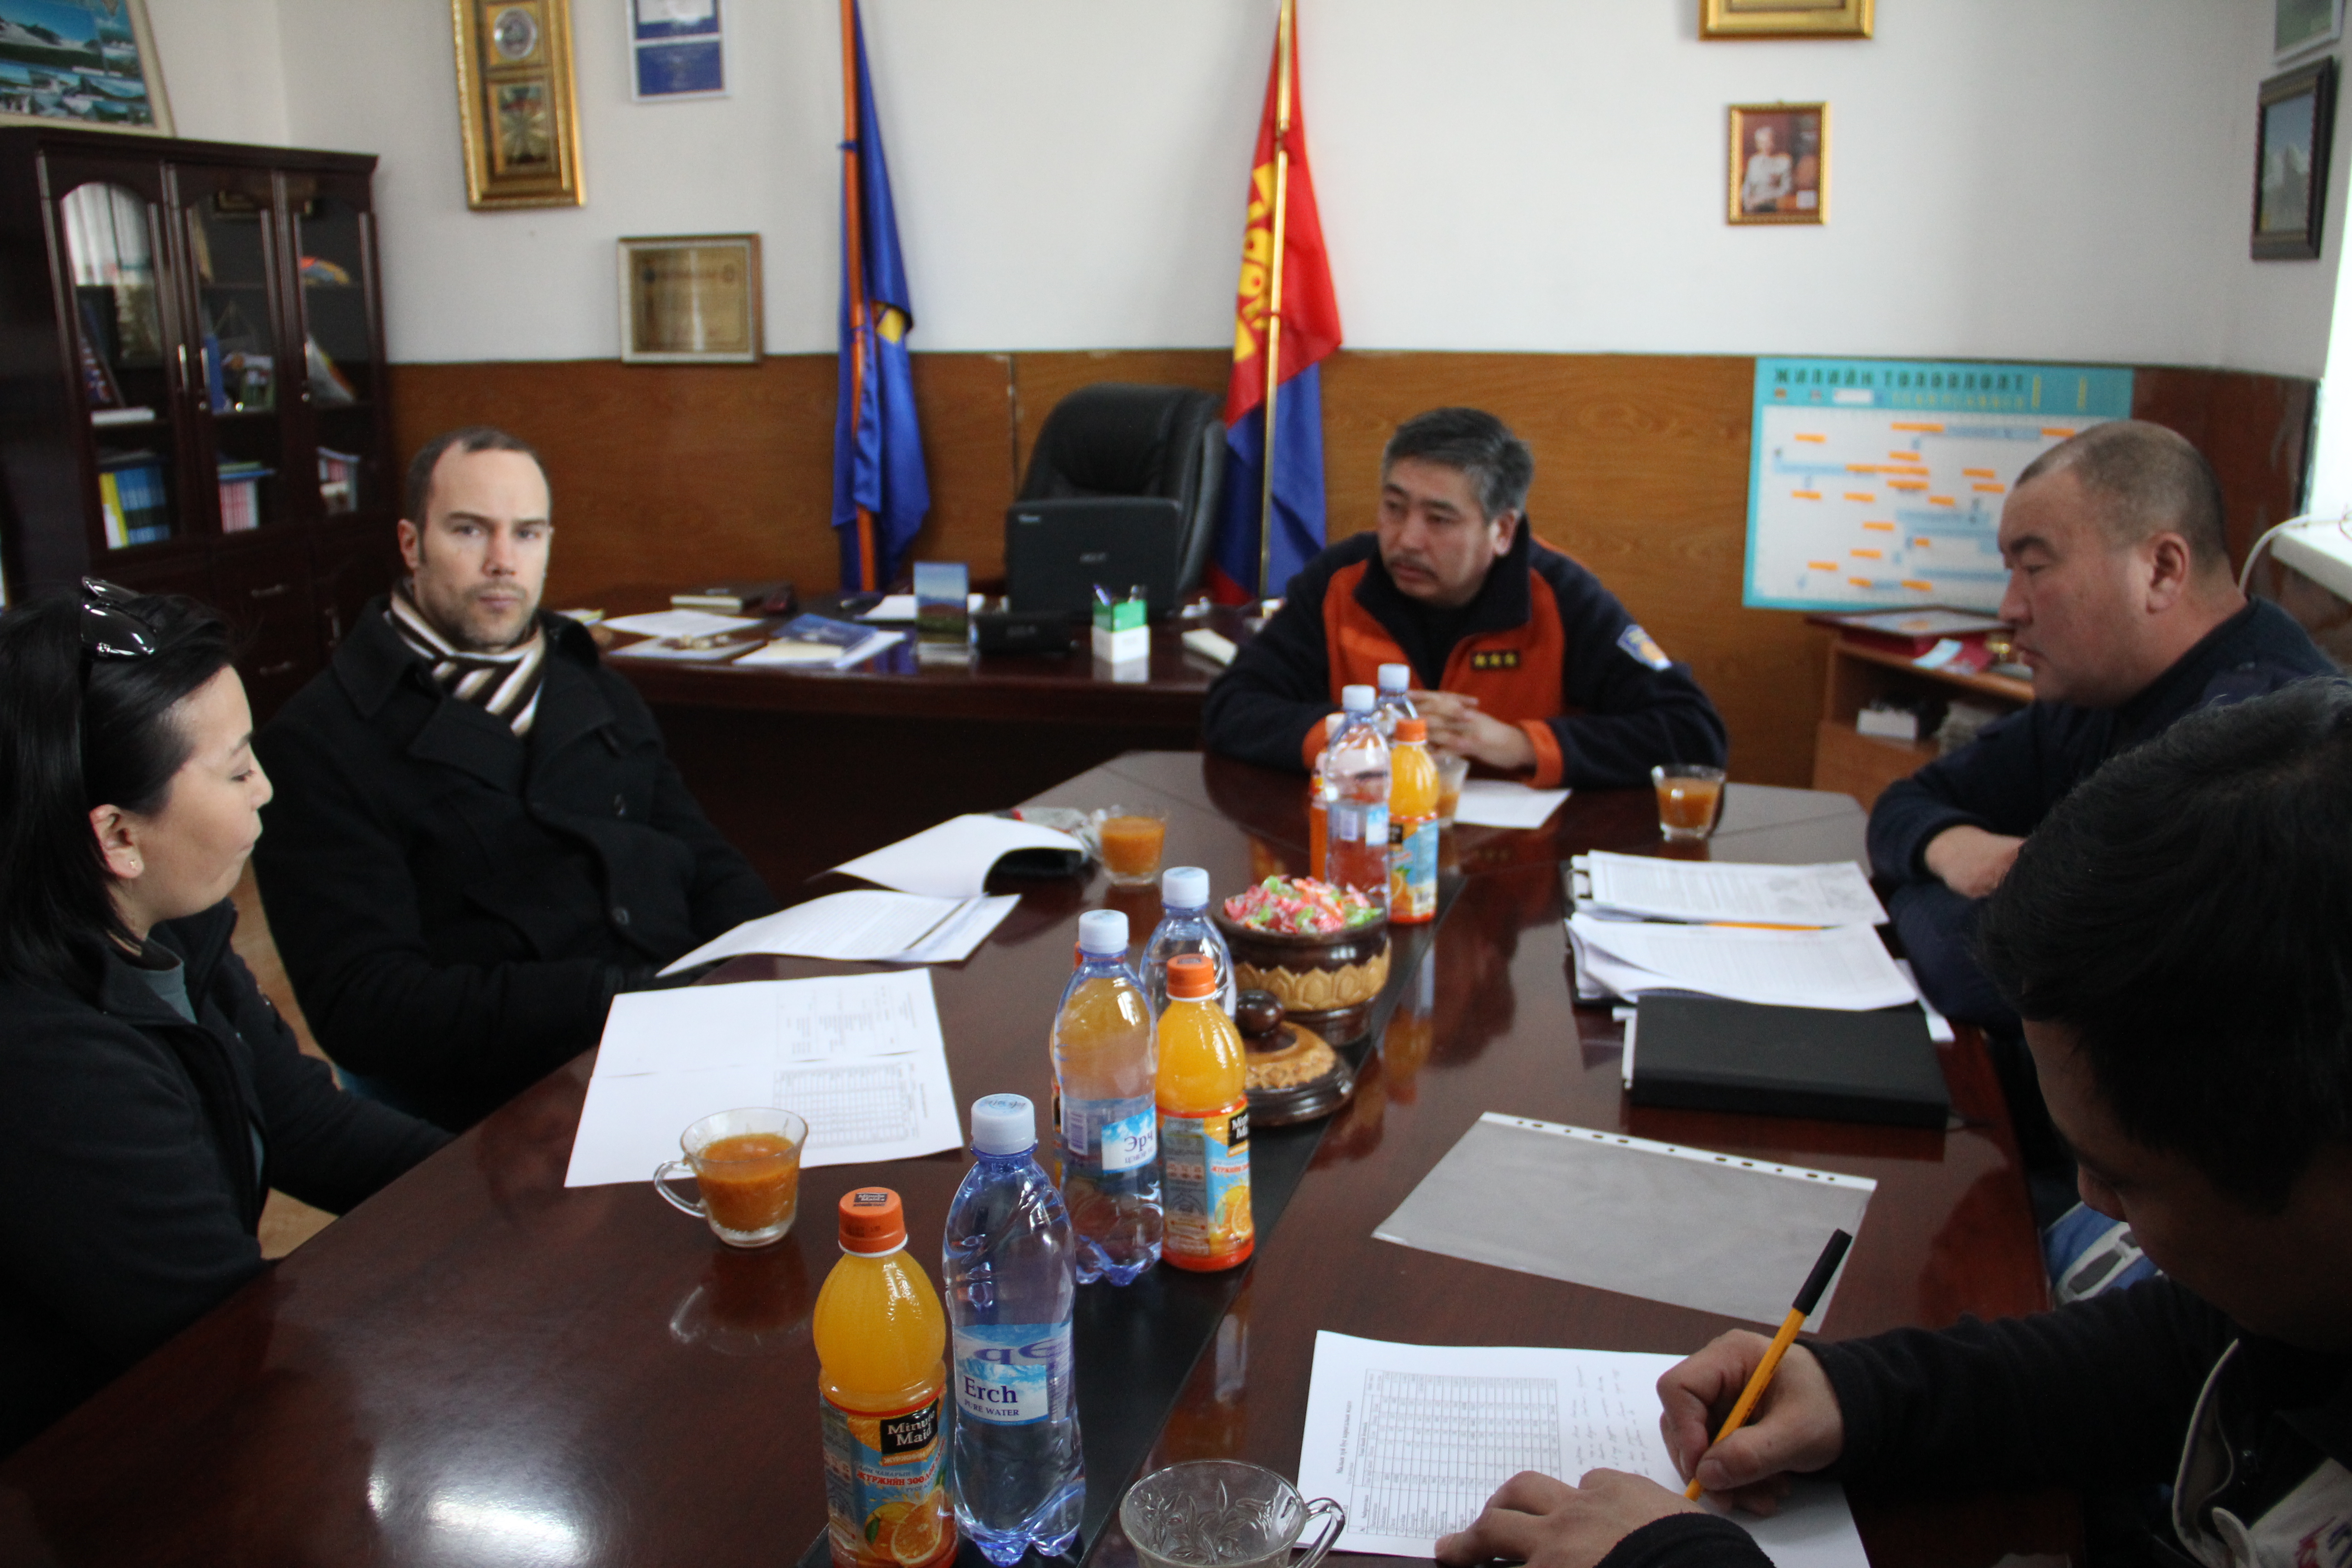 Каритас Монгол олон улсын байгууллагын төлөөлөгчид Увс аймагт ажиллалаа.